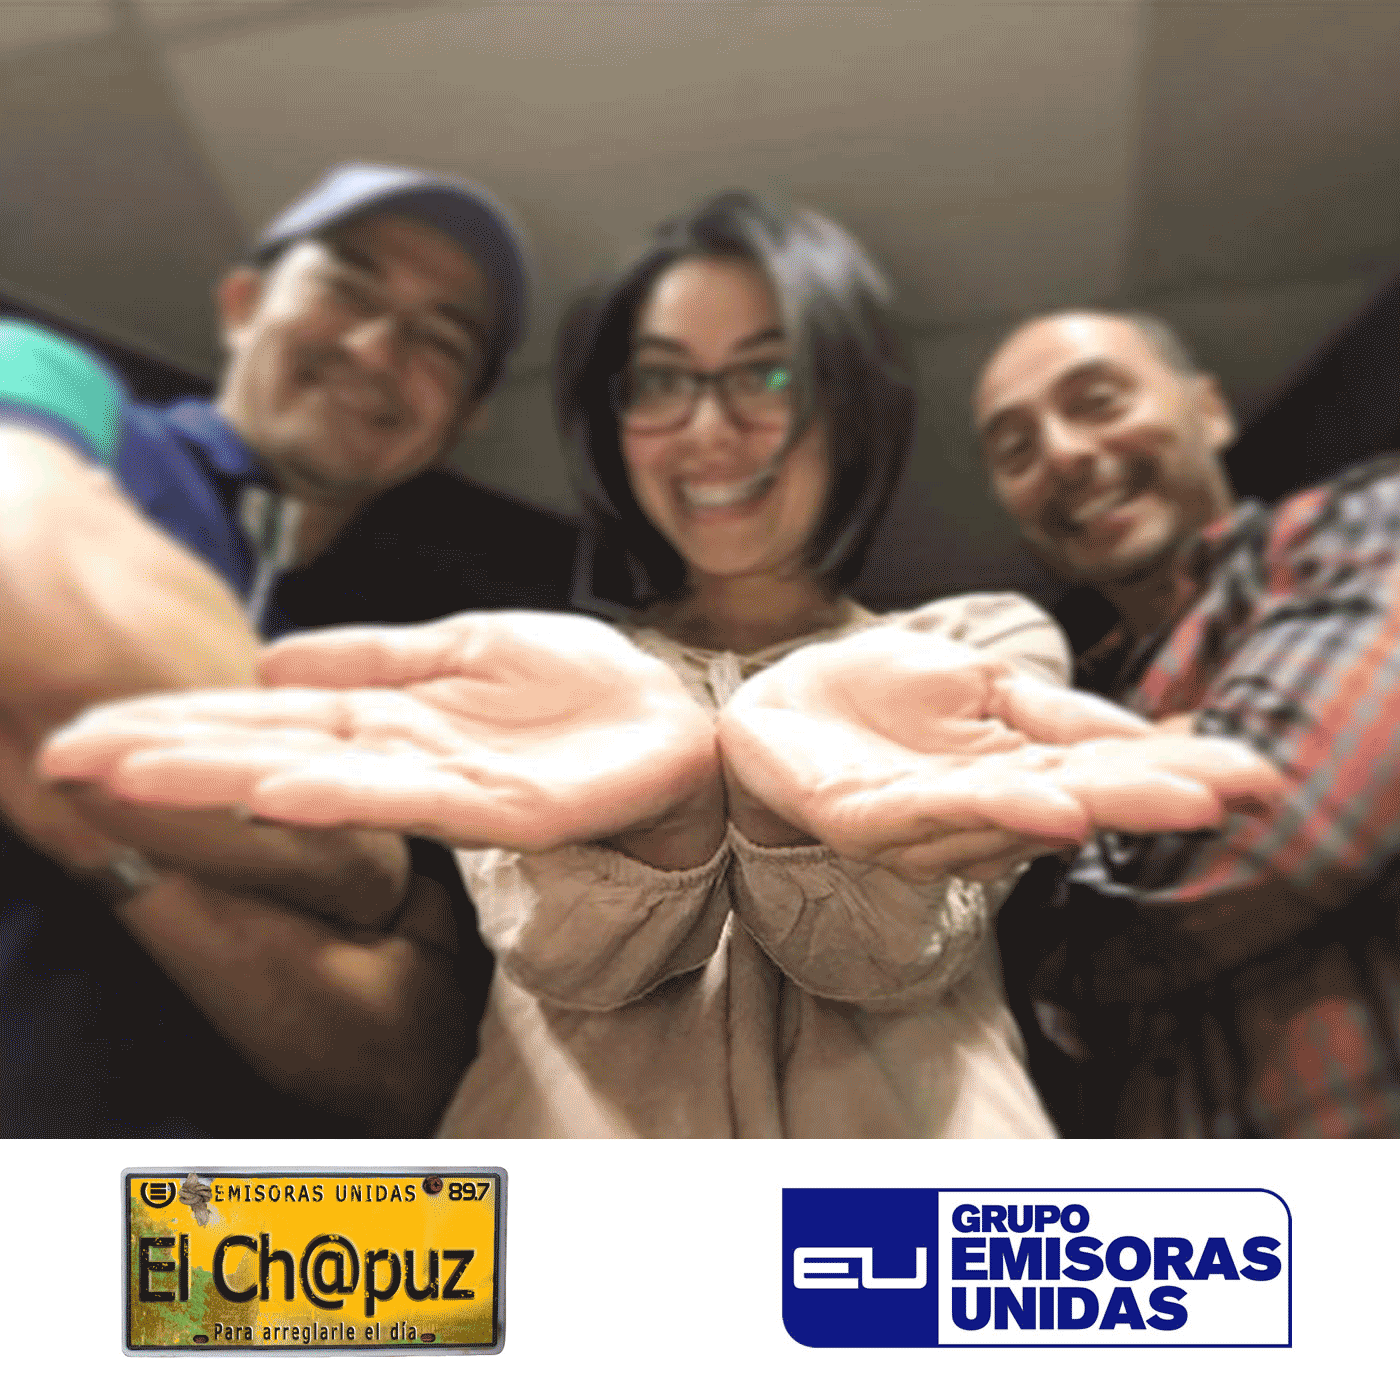 EC06 - El Chapuz - Emisoras unidas - #QueAlguienMeExplique